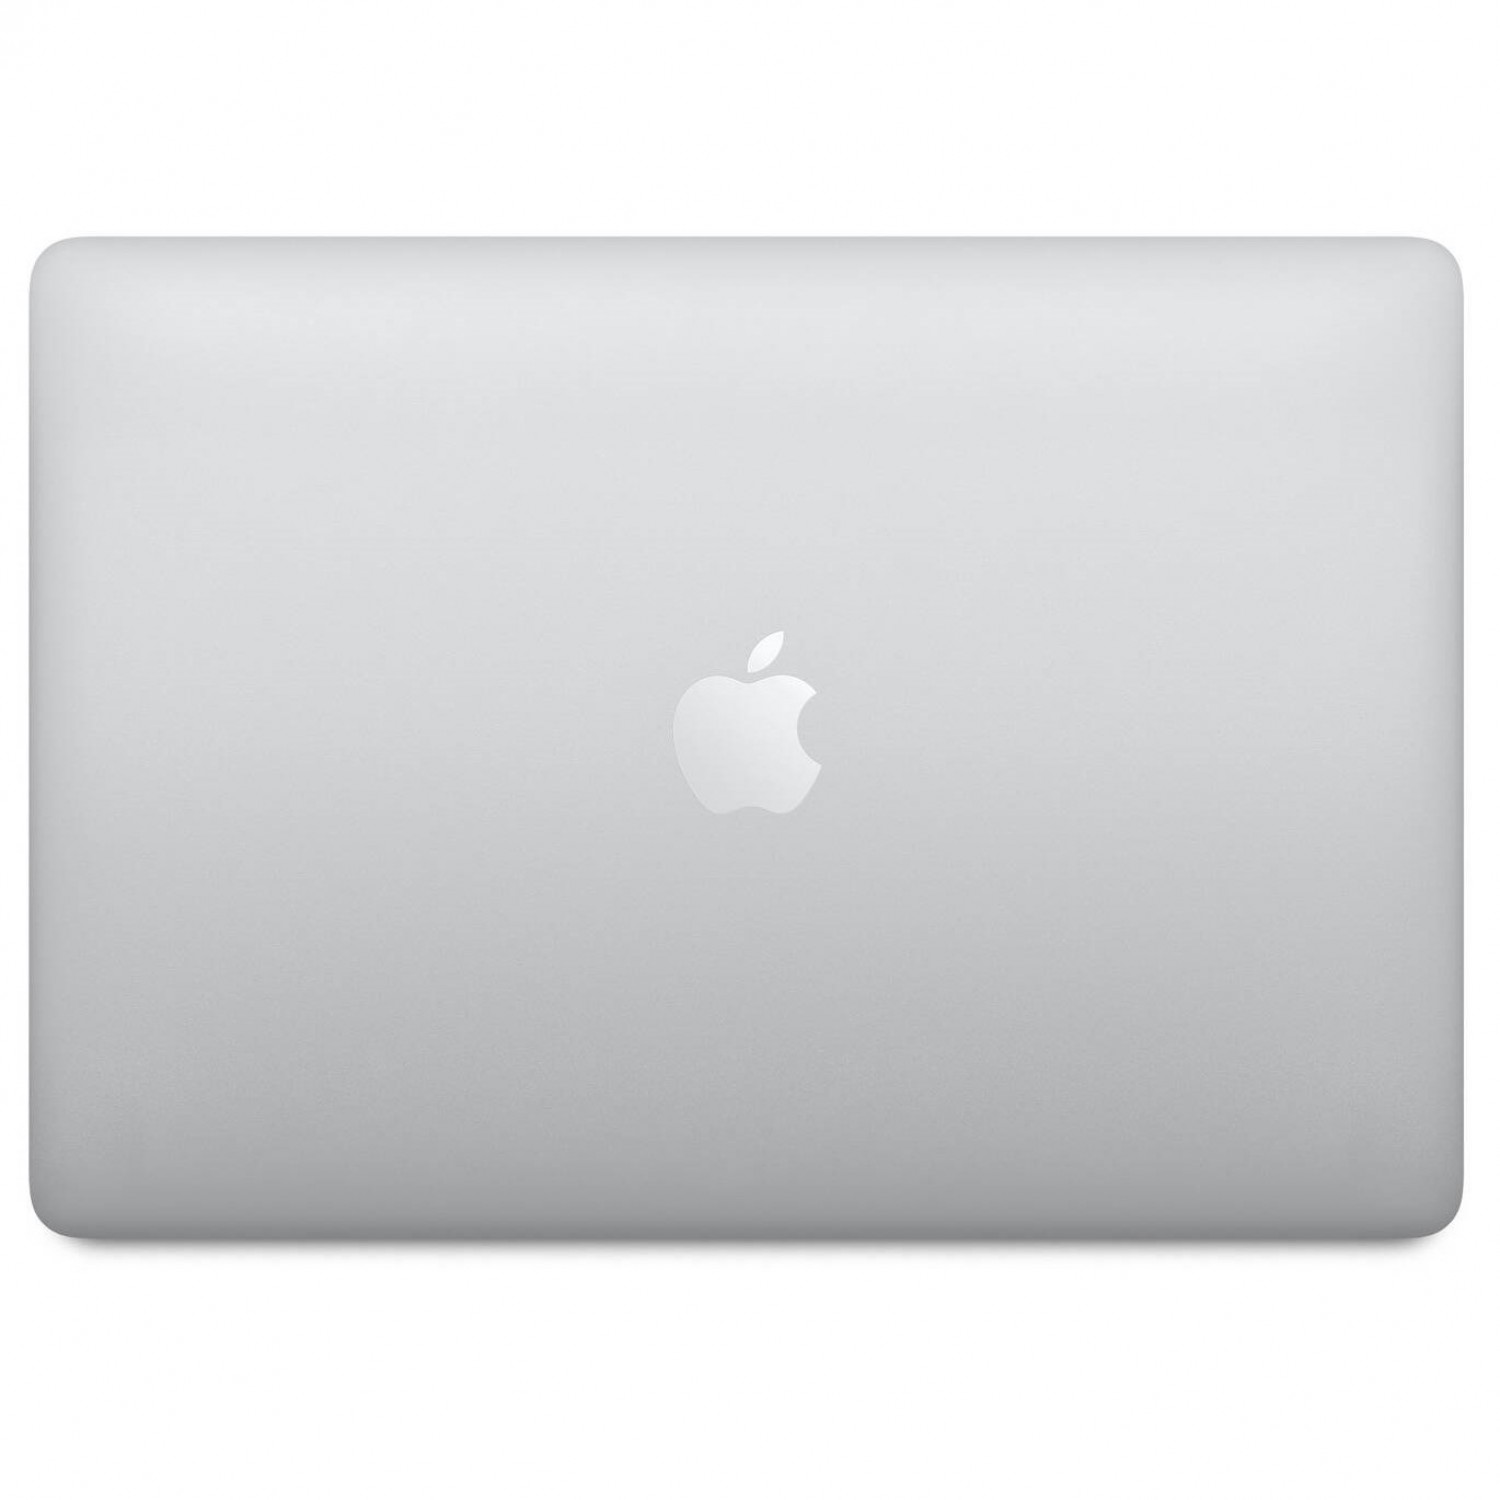 لپ تاپ Apple MacBook Pro 13 2020 CTO - Silver - C-5